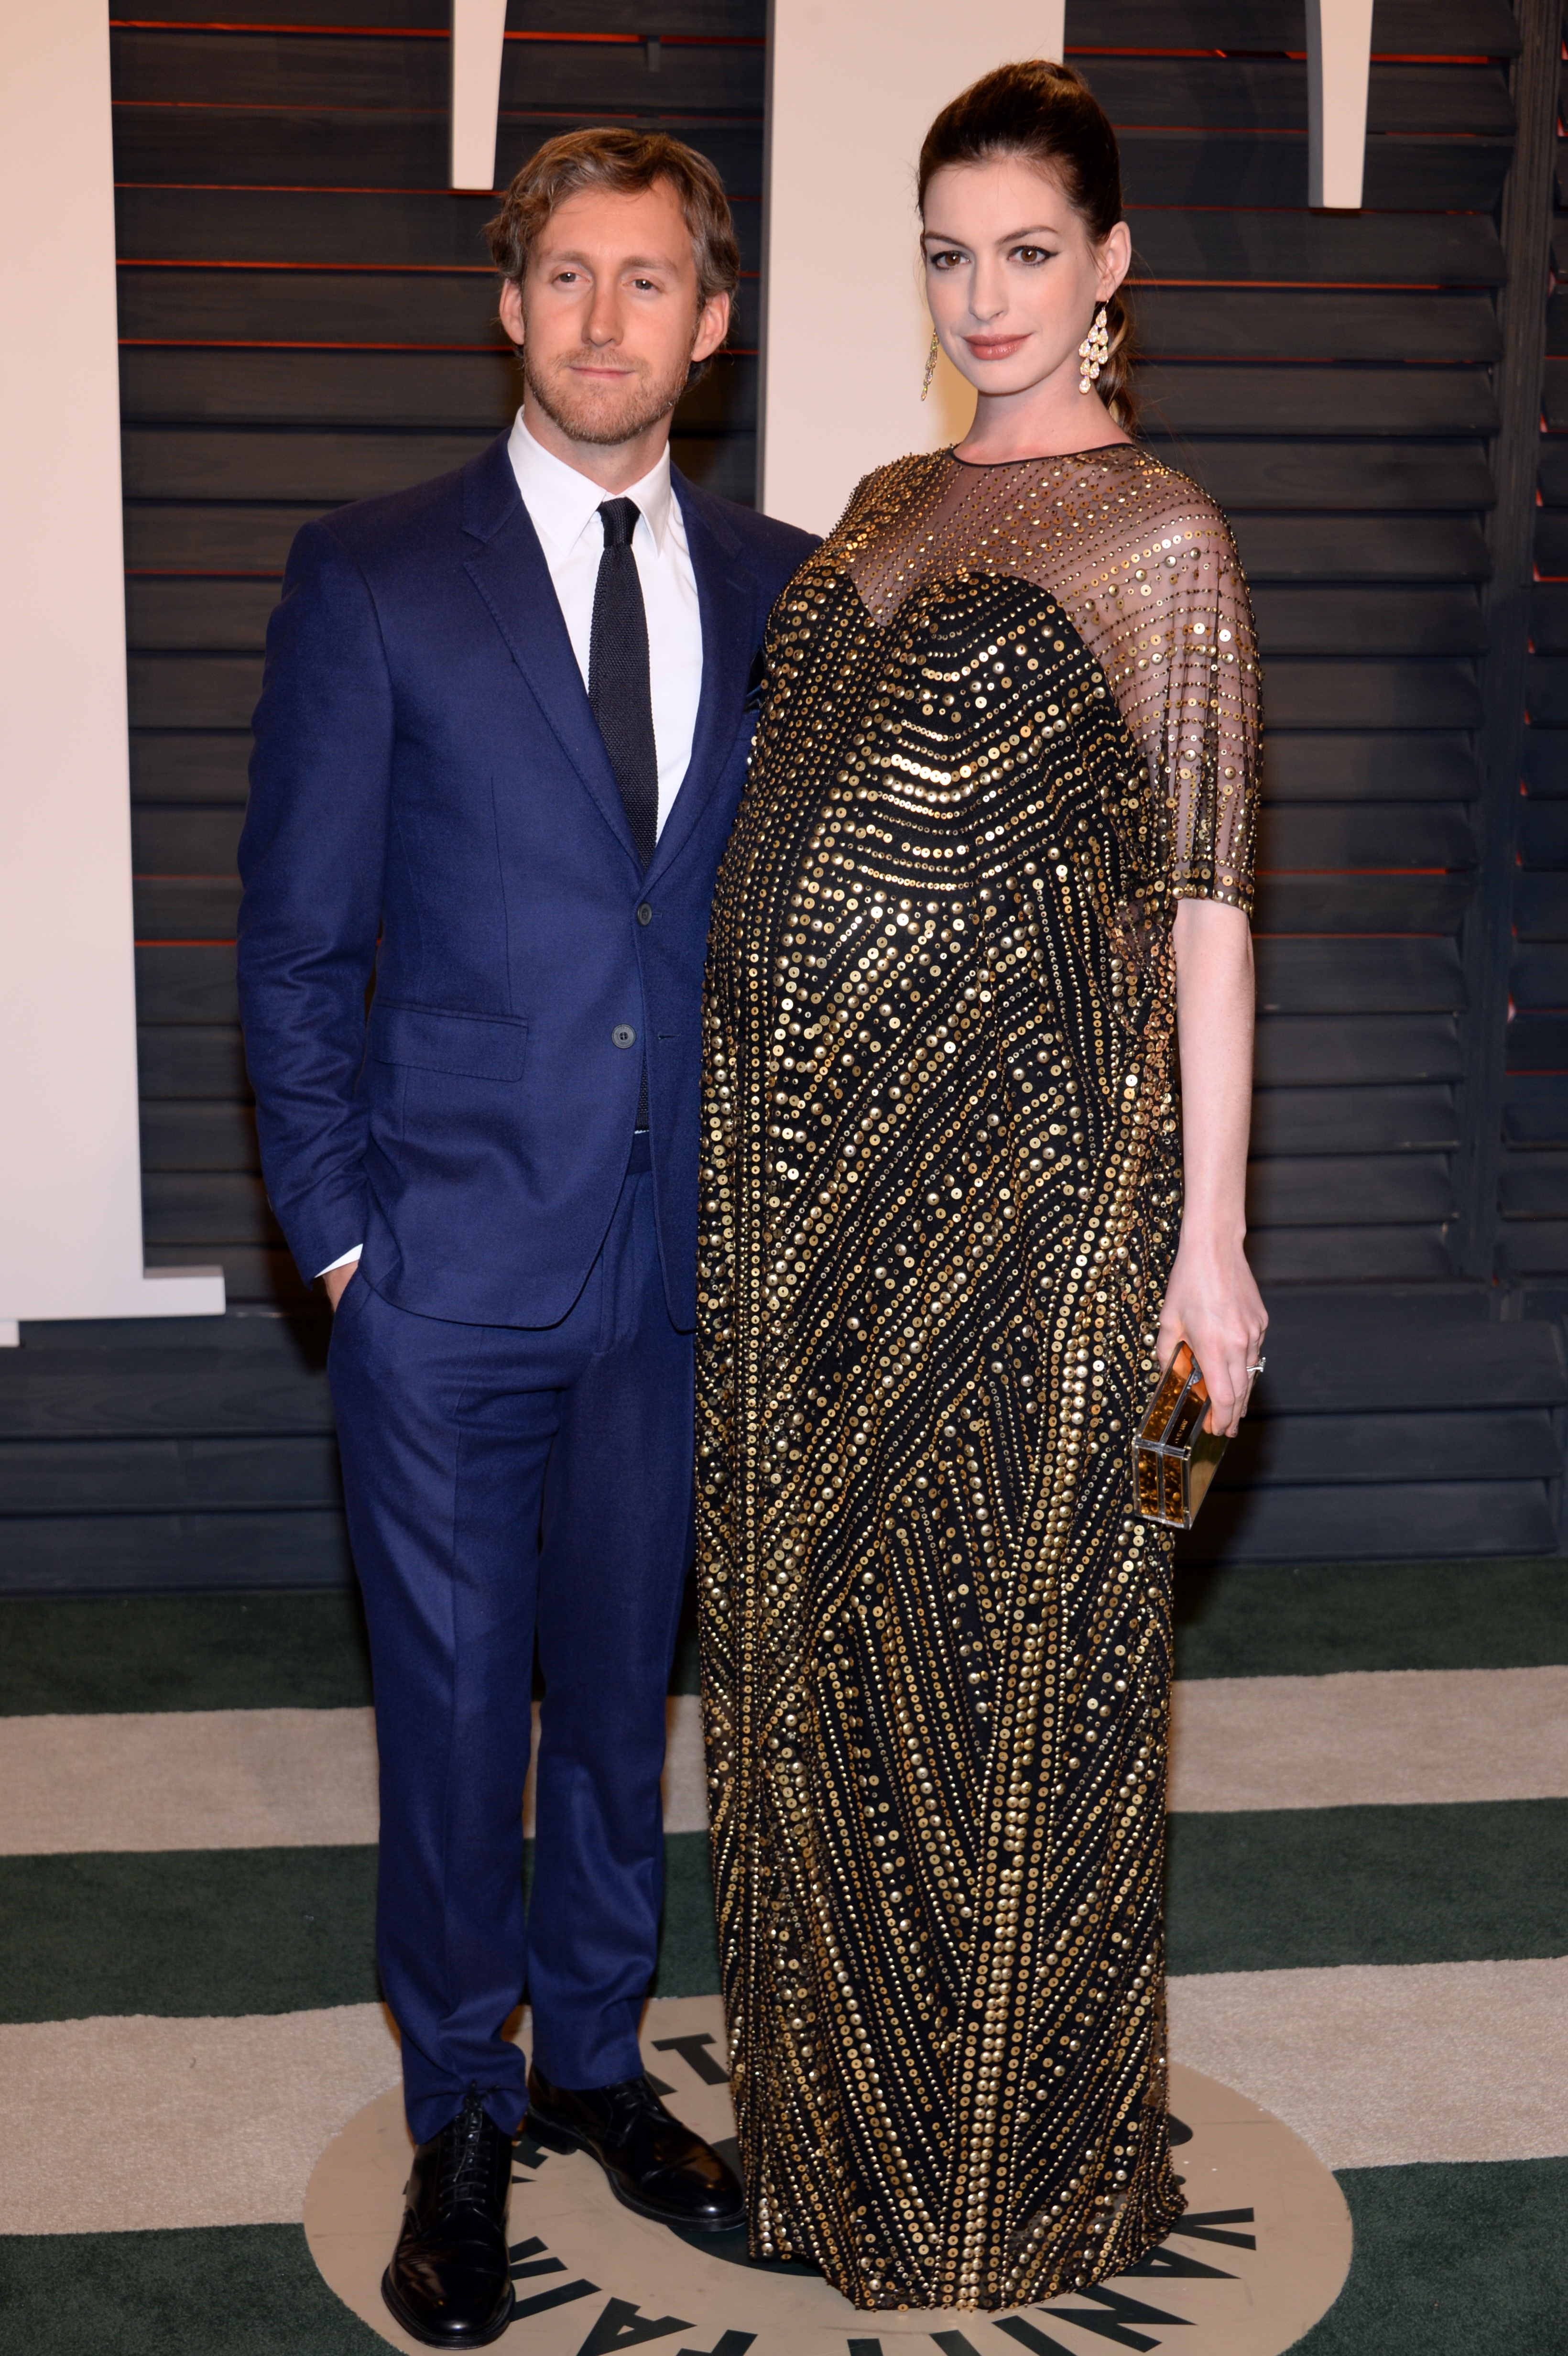 Anne Hathaway et Adam Shulman arrivent à la soirée Vanity Fair qui suit la 88e cérémonie des Oscars au Wallis Annenberg Center for the Performing Arts à Beverly Hills dimanche soir 28 février 2016. | Source : Getty Images